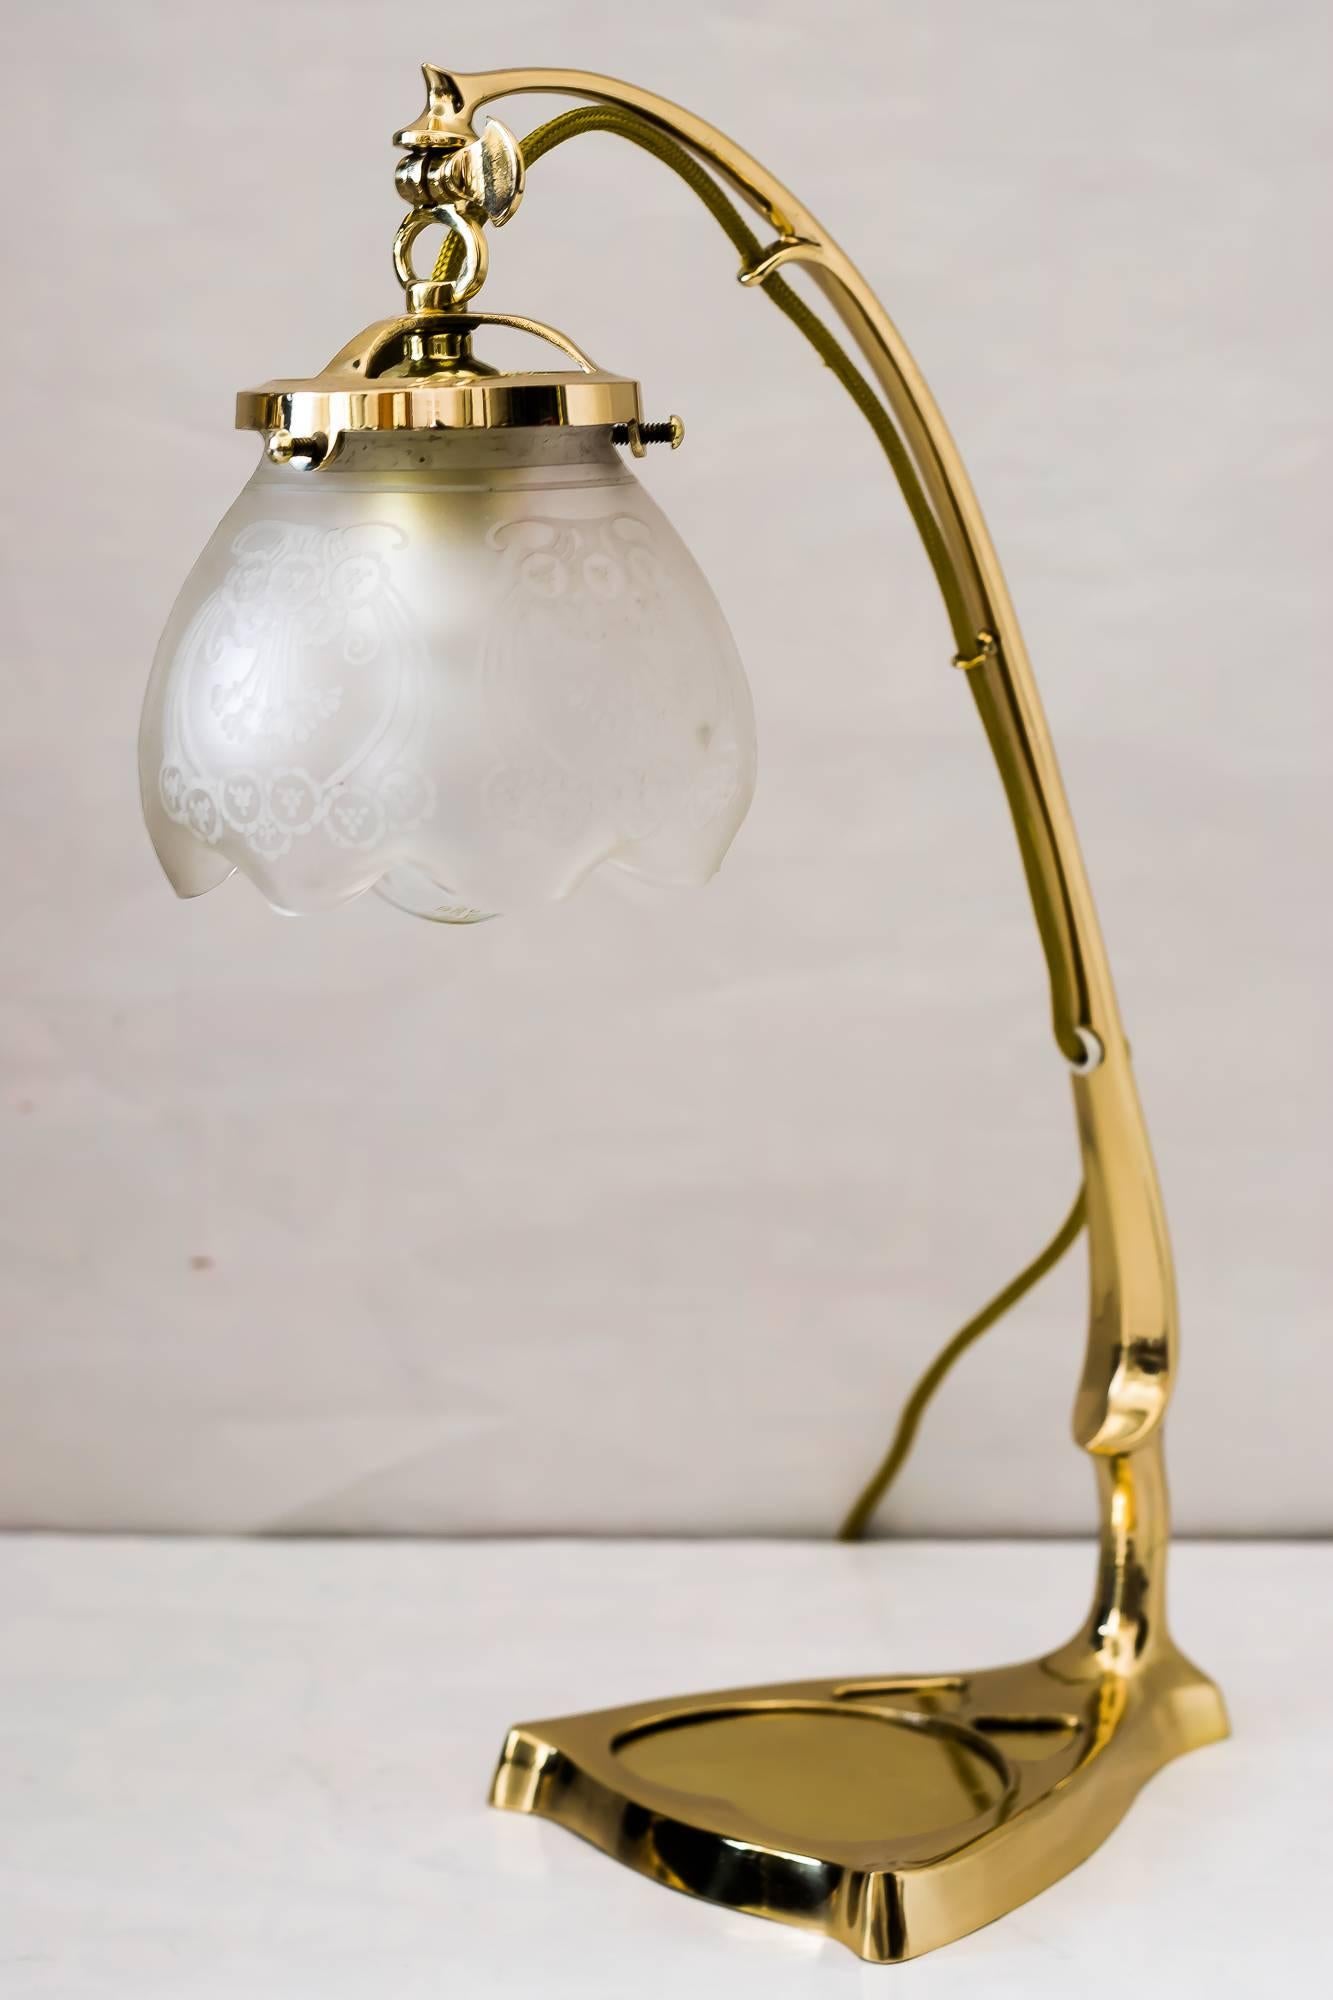 Two Art Nouveau Table Lamp with Original Glass Shades (Art nouveau)